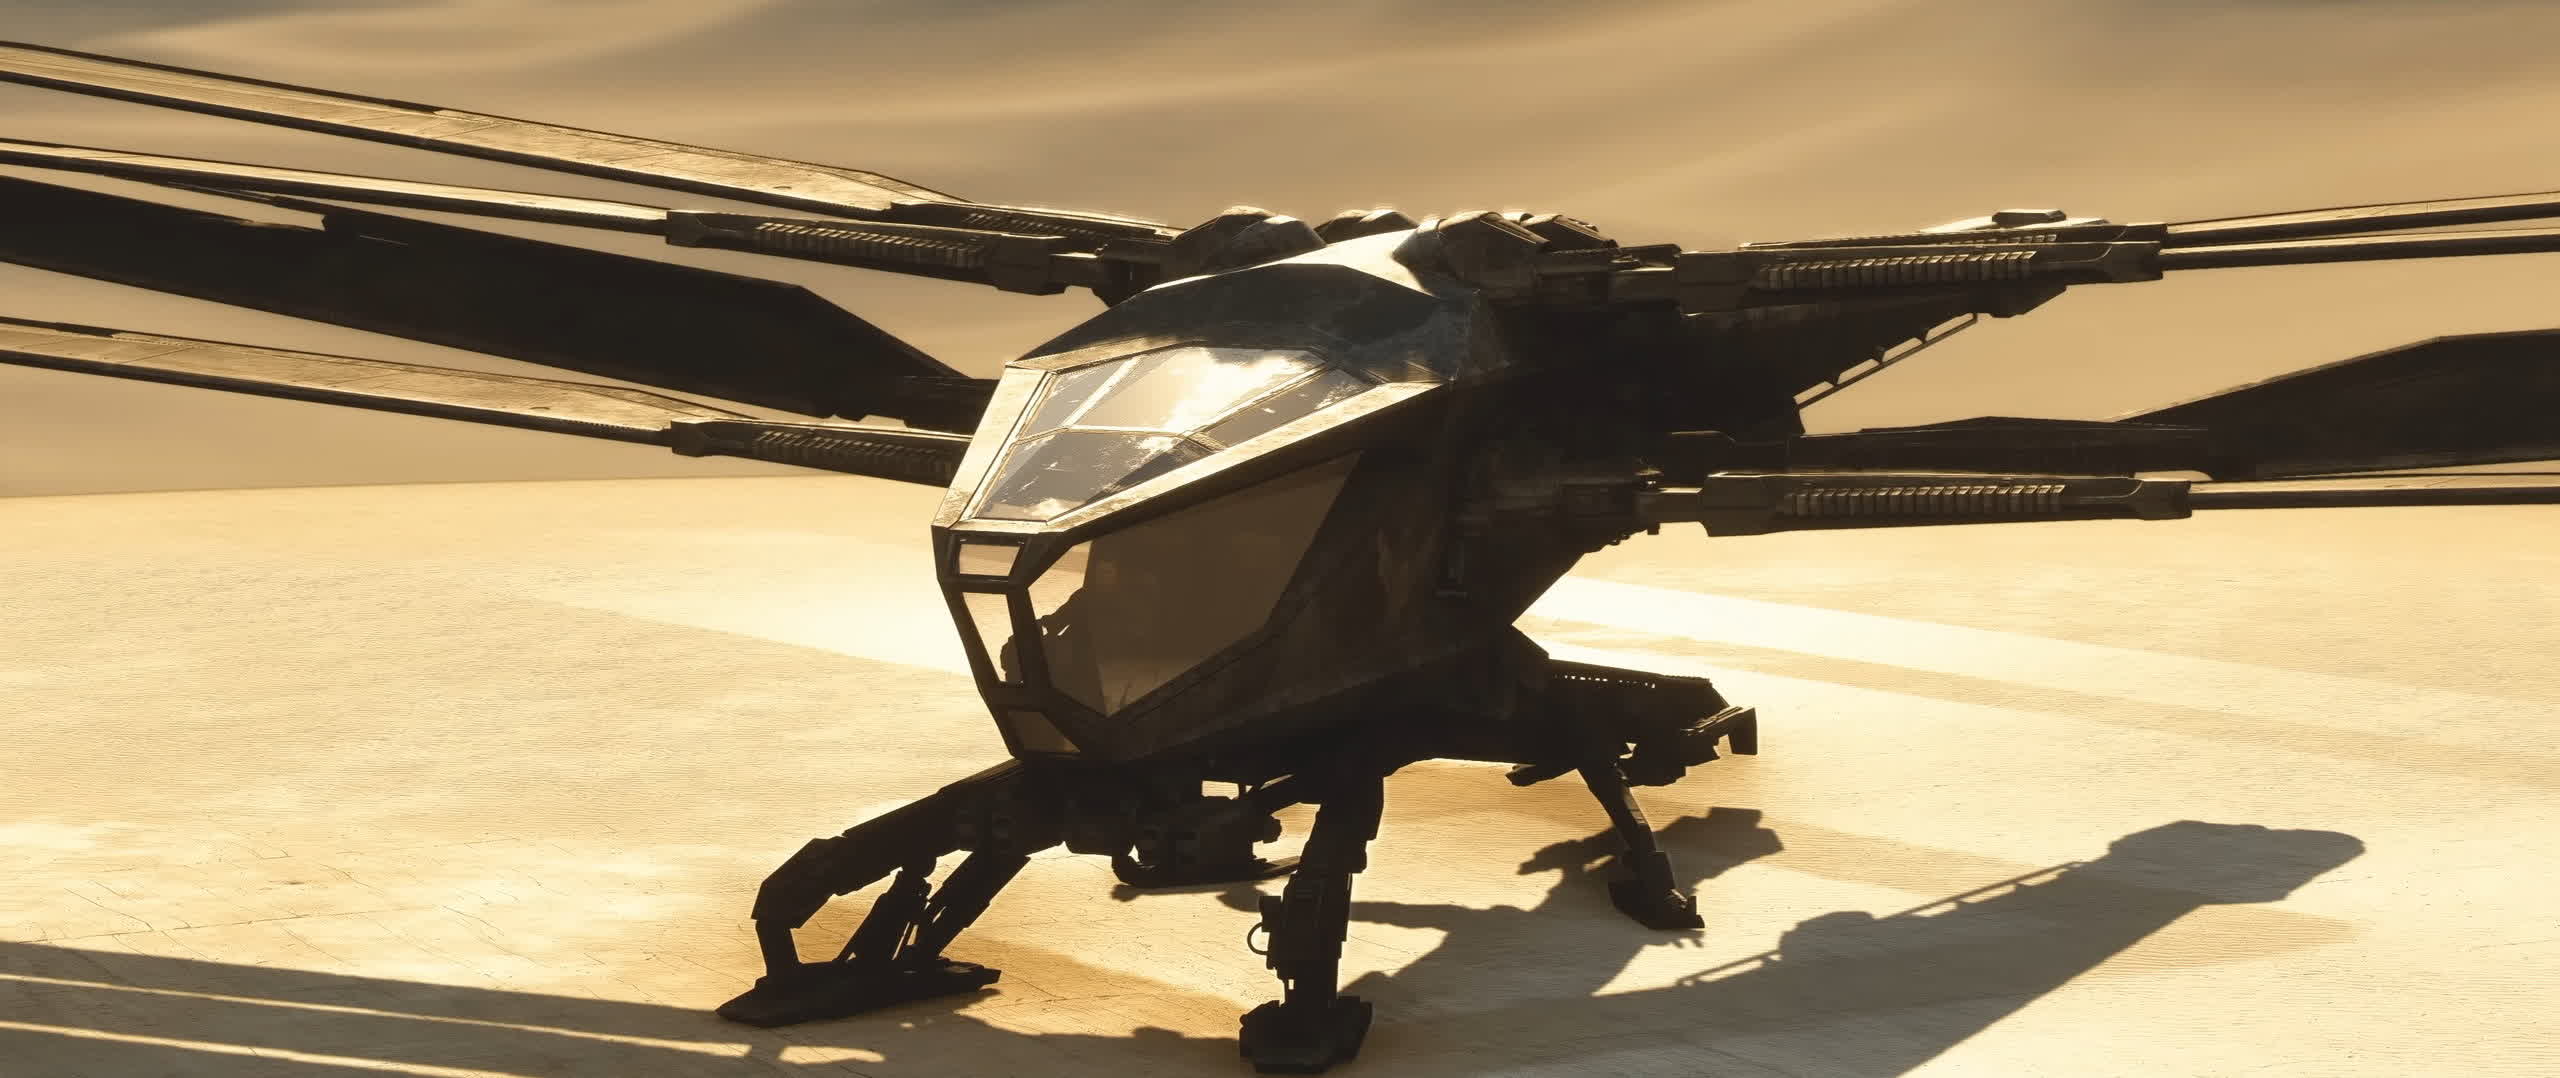 Microsoft Flight Simulator lleva a los jugadores al mundo desértico de ciencia ficción de Arrakis de Dune